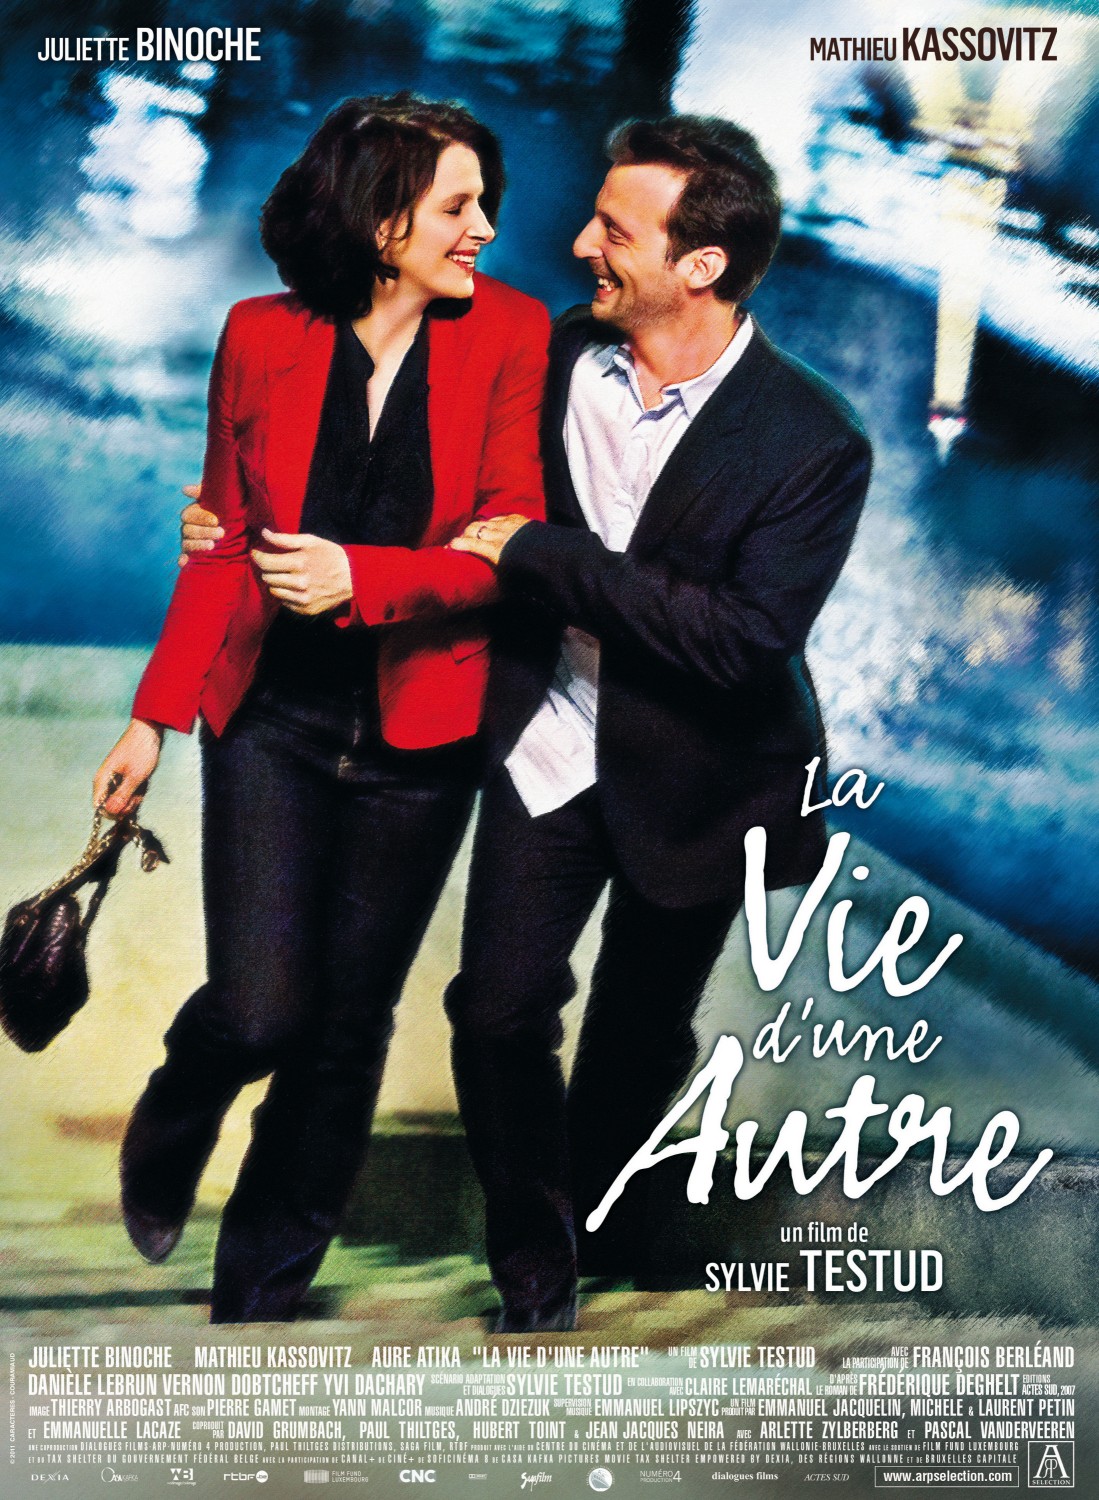 Extra Large Movie Poster Image for La vie d'une autre (#1 of 2)